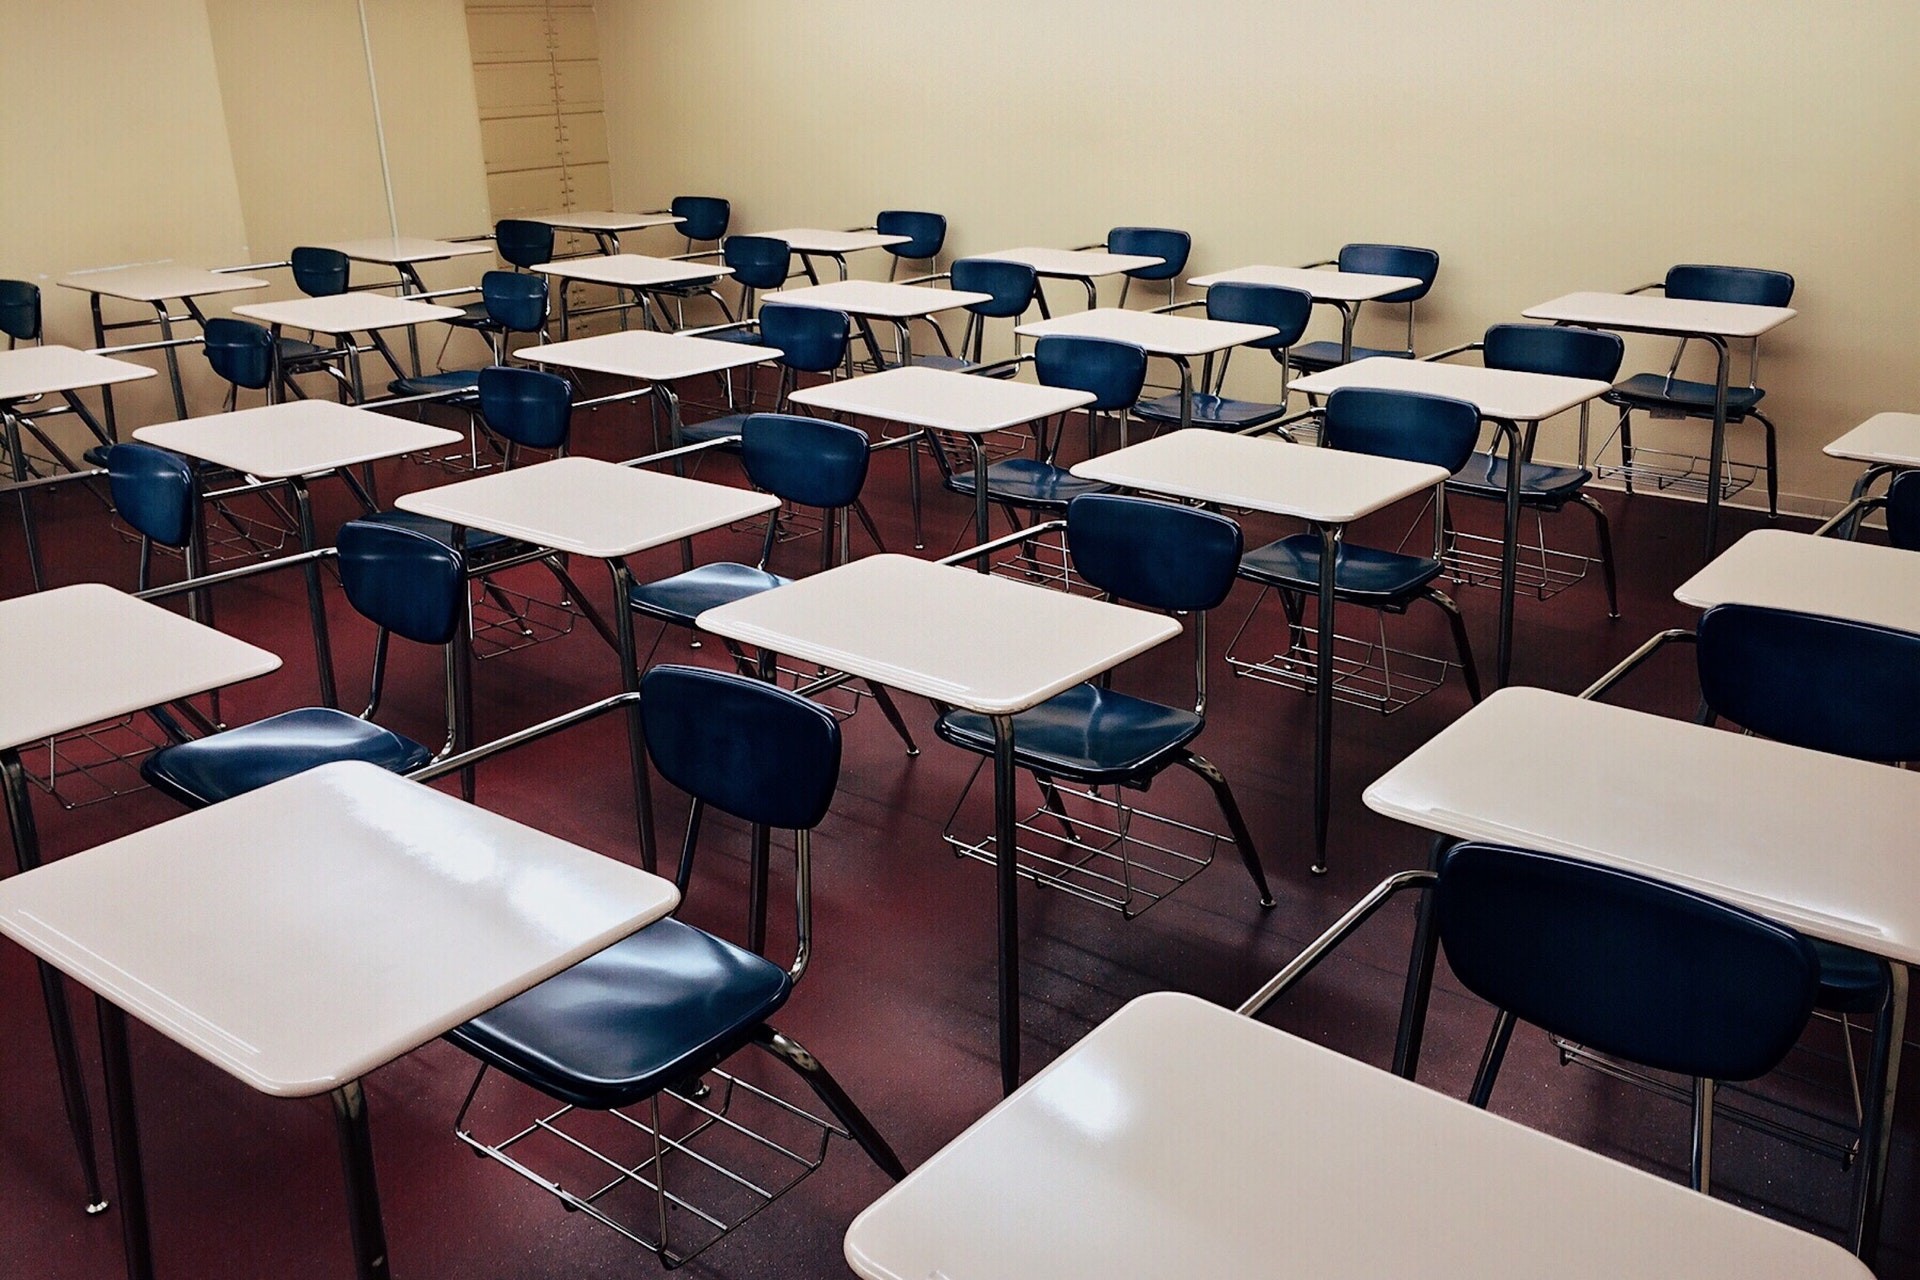 Empty desks in an empty classroom over summer. 